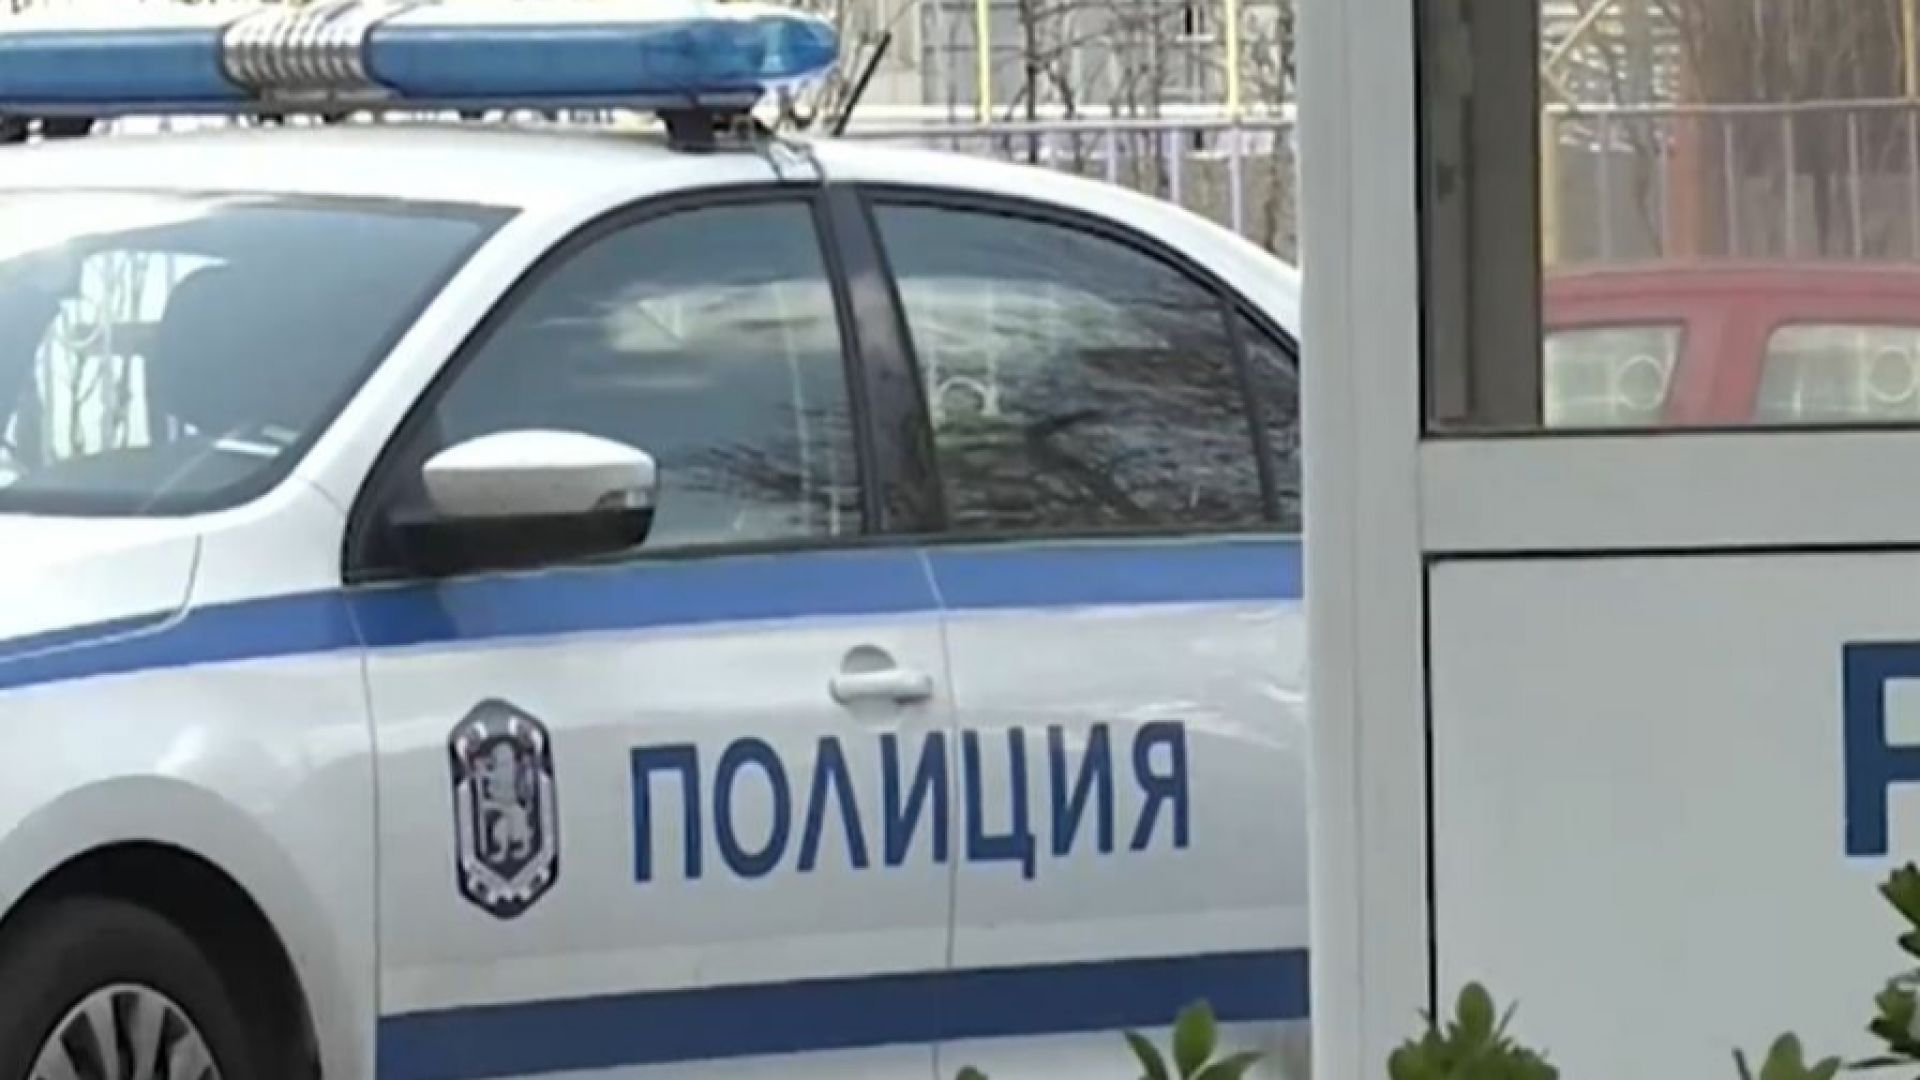 Психичноболен наръга двама в Добрич, единият от които е починал